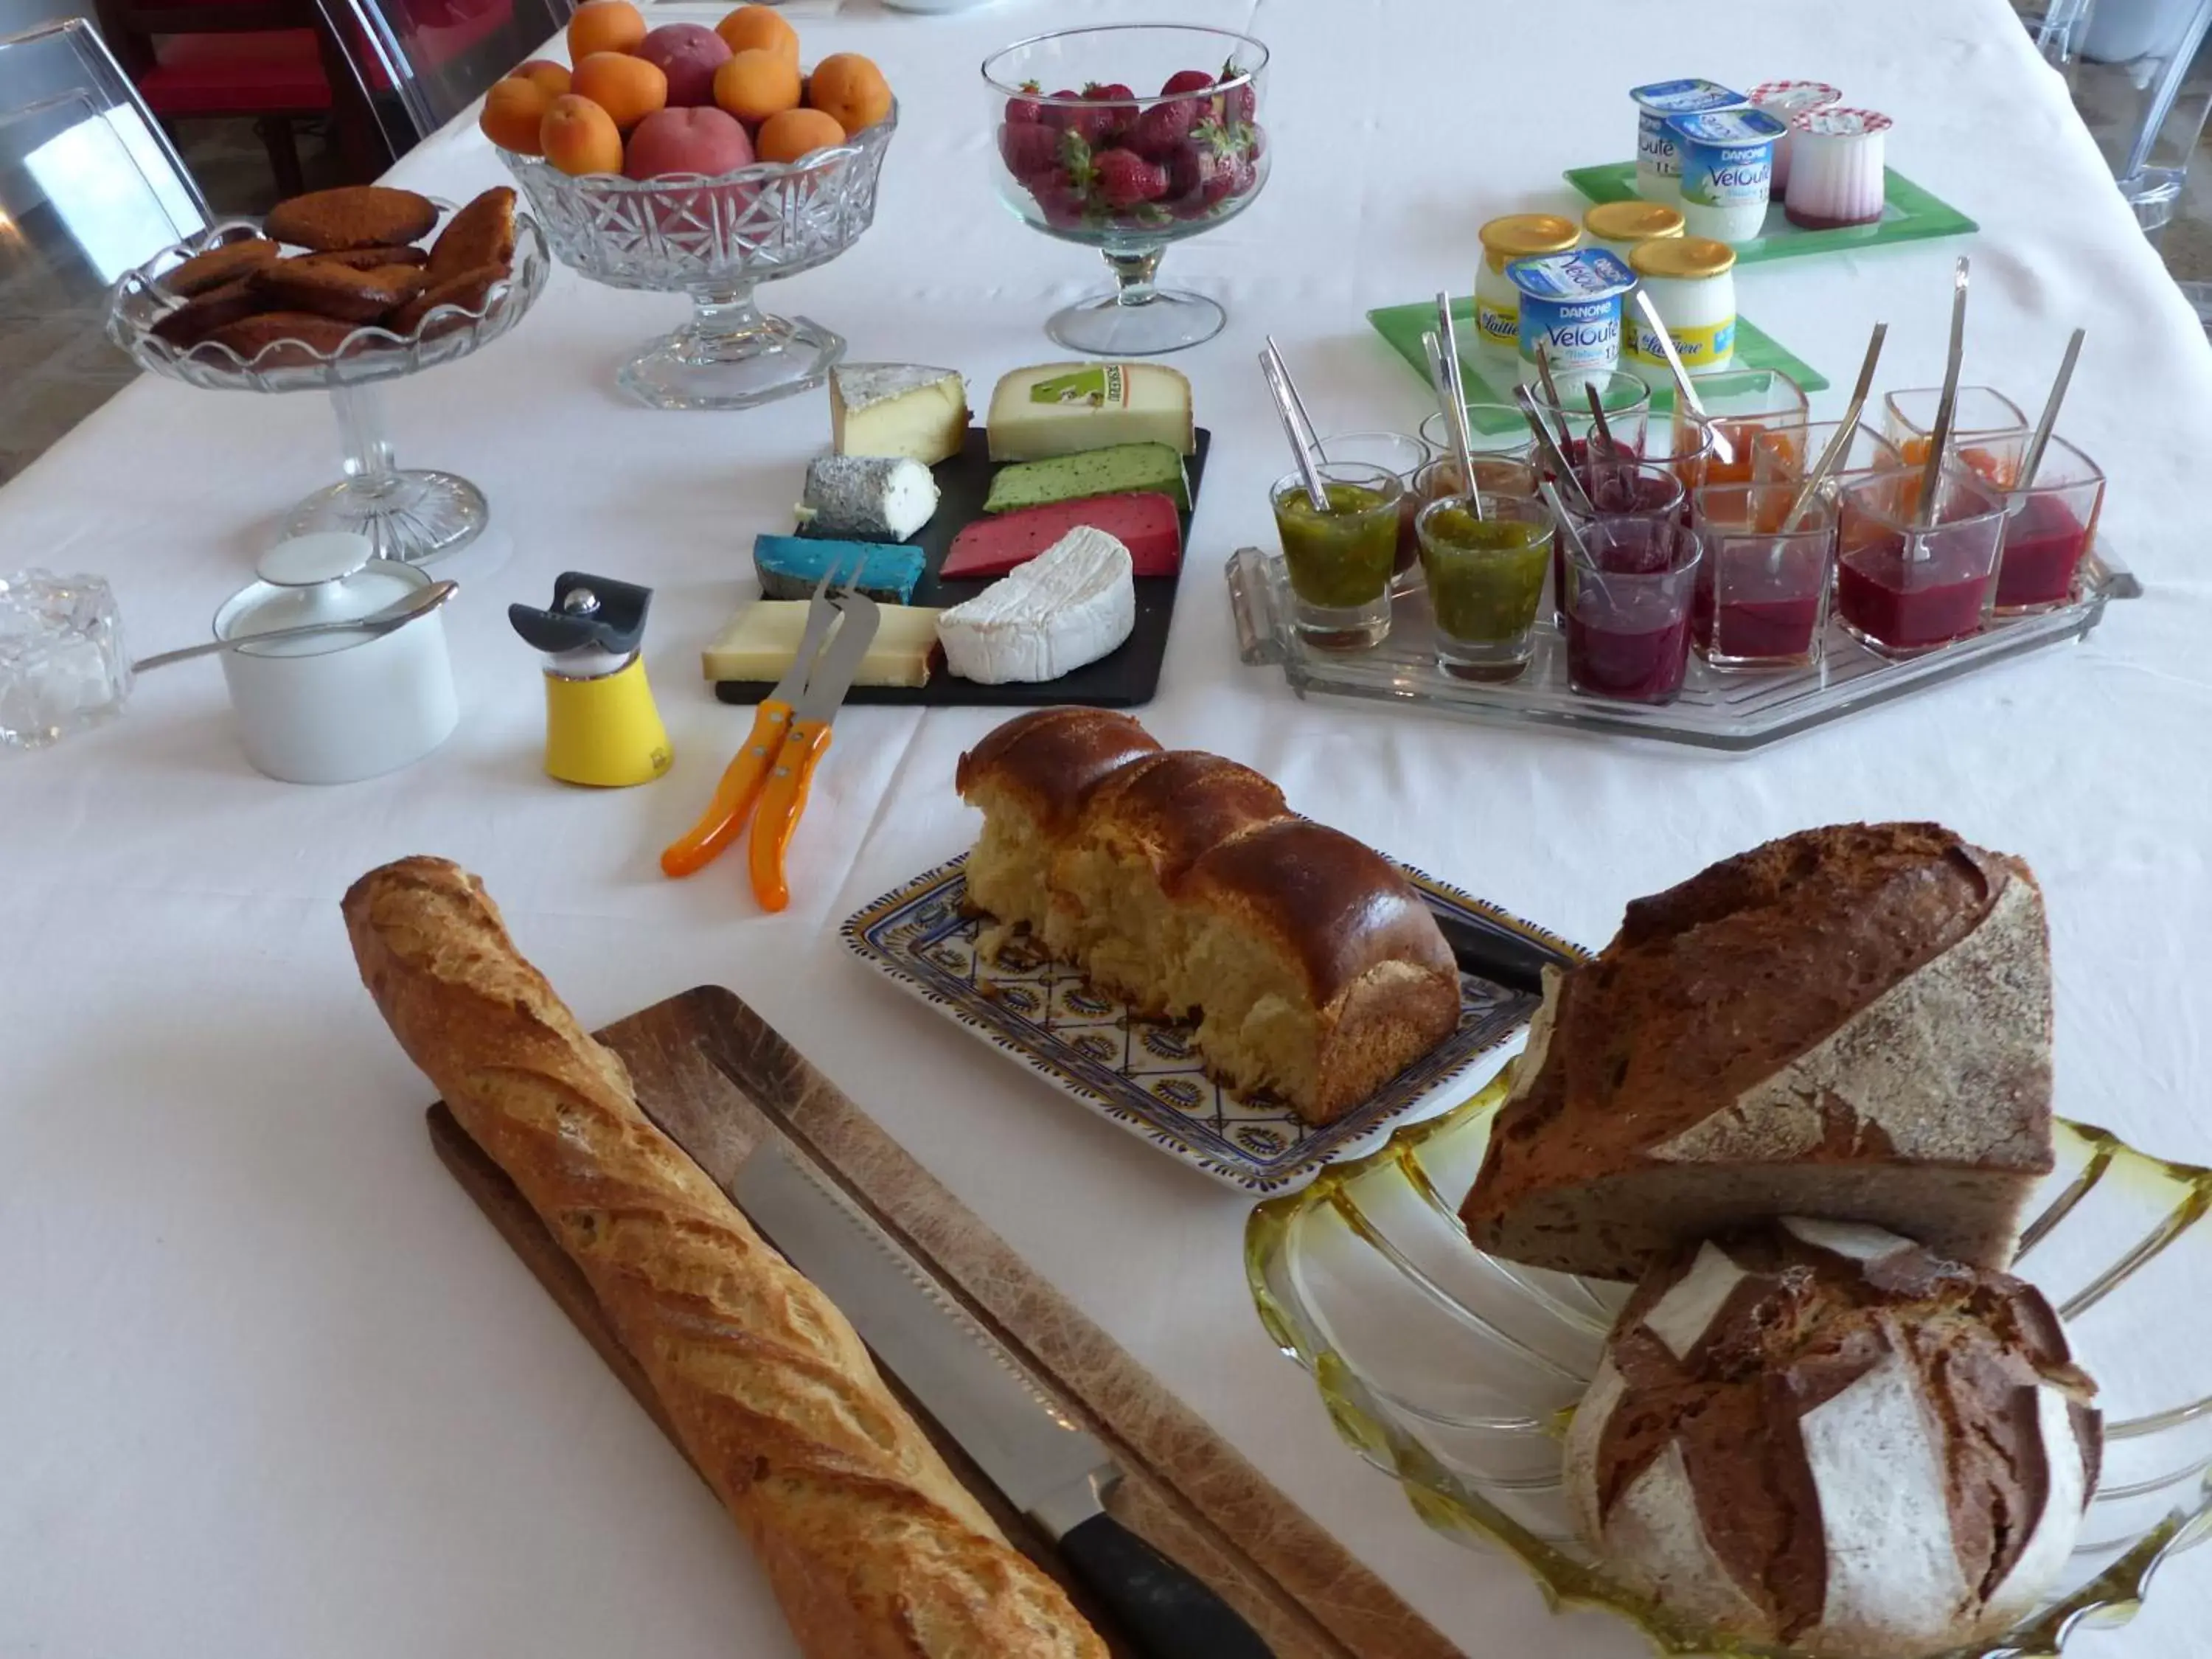 Continental breakfast in Les Chambres d'hôtes de Kérasquer